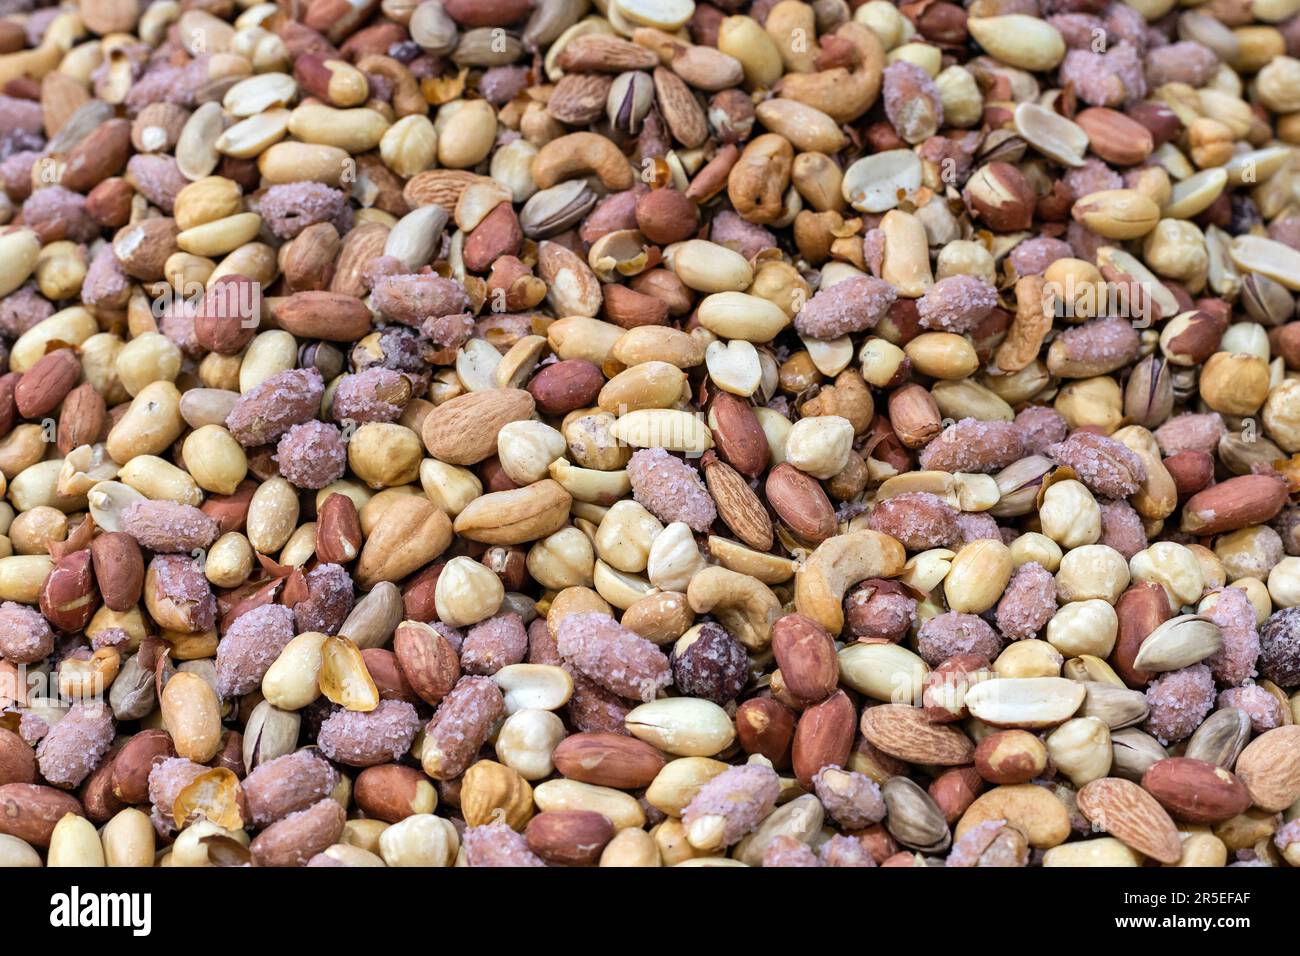 Fond de divers noix (amande, noix de cajou, noisette, pistache, noix). Mélange de noix sur le marché. Banque D'Images